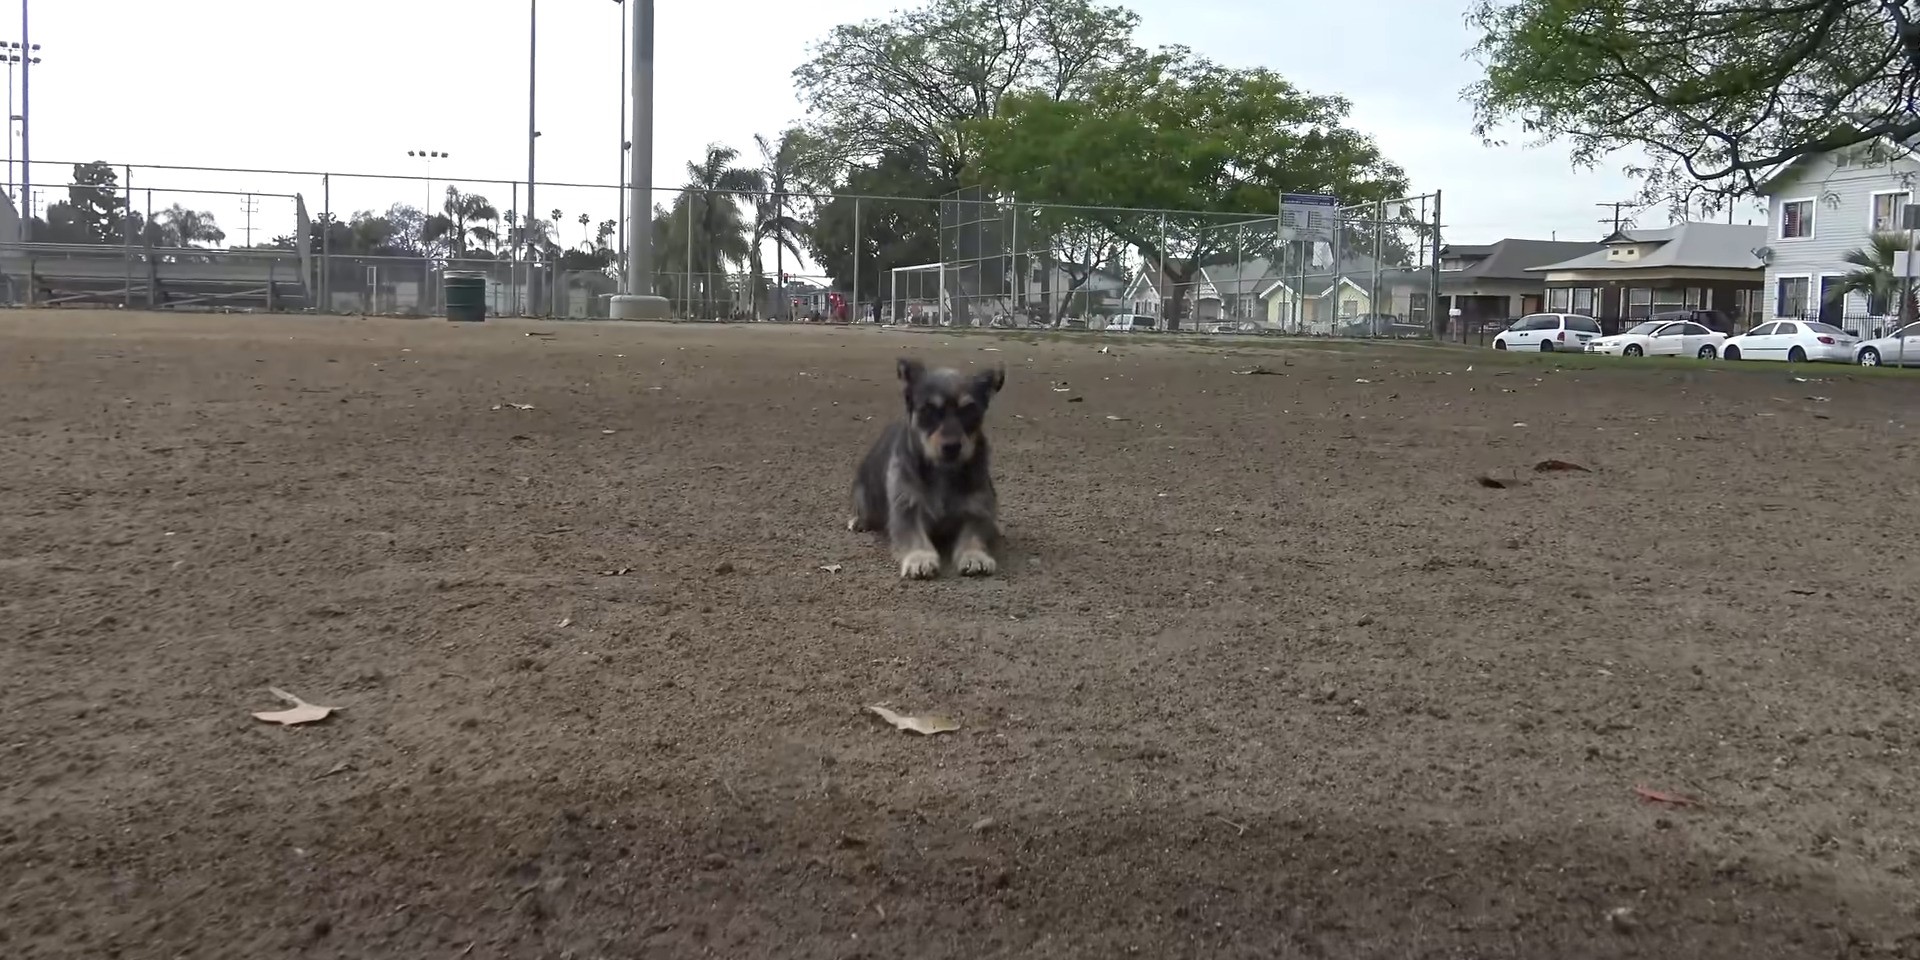 black dog sitting on a dirt